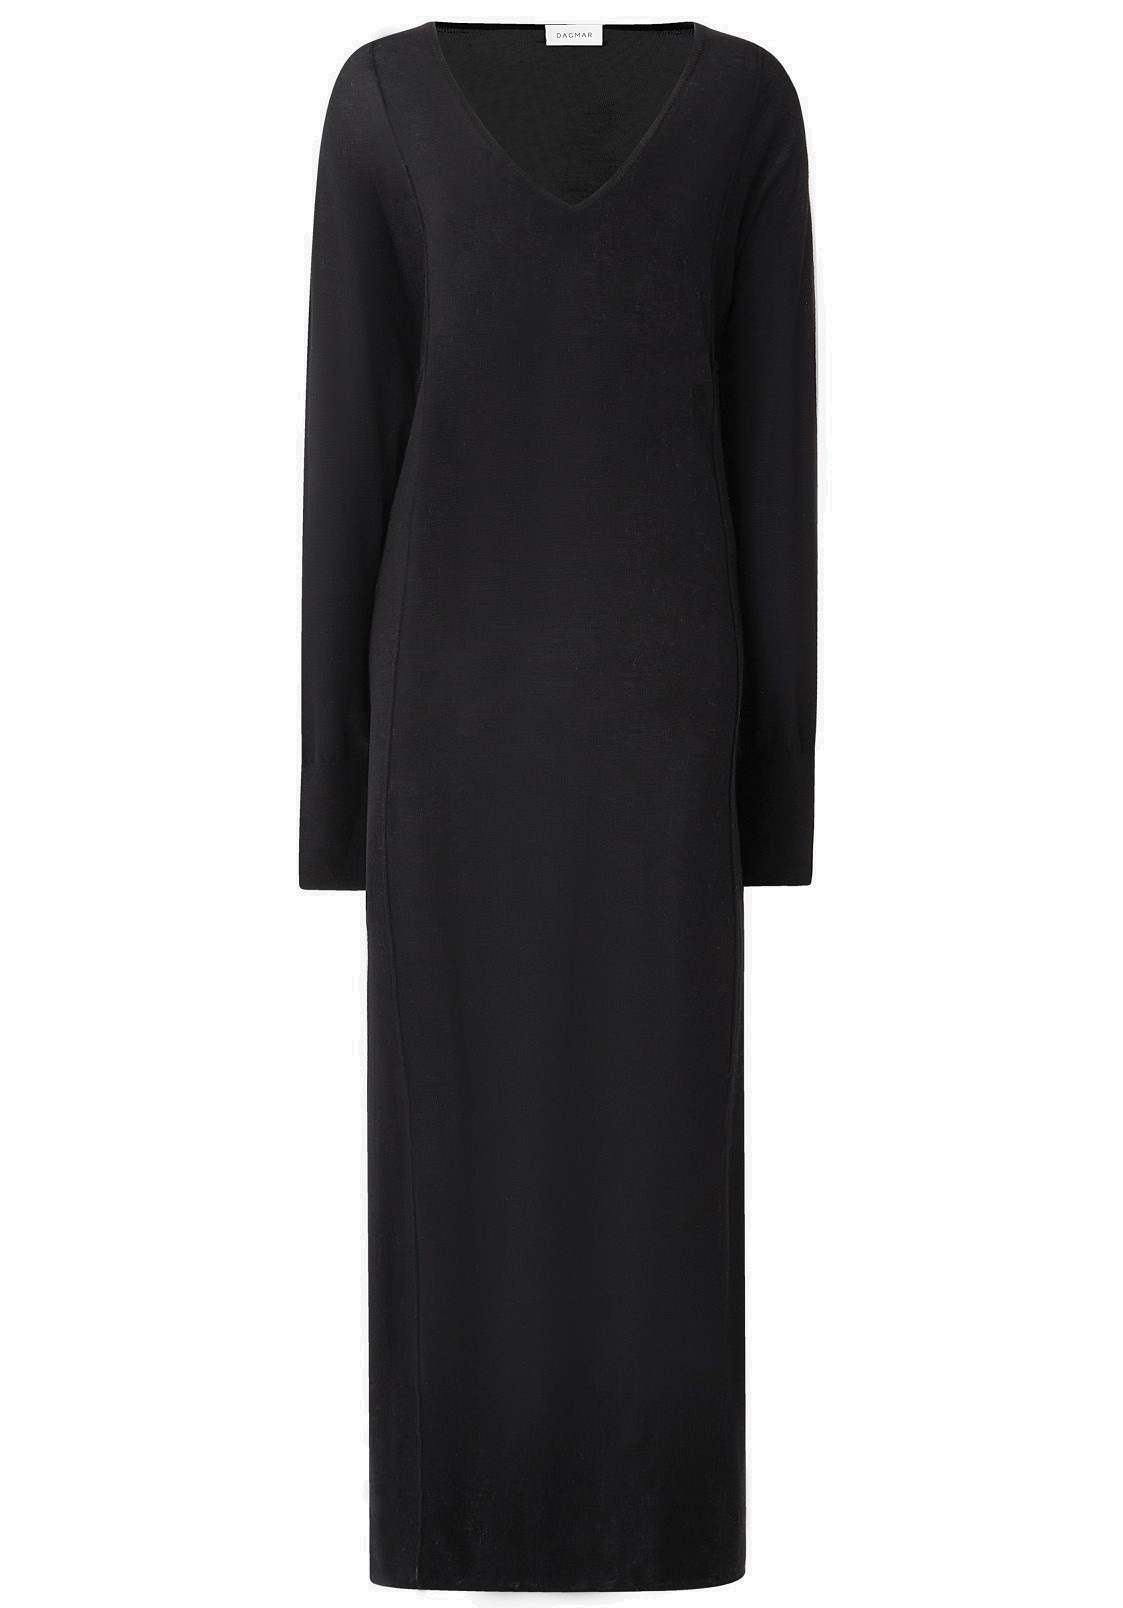 DAGMAR Merino V-Neck Dress in Black